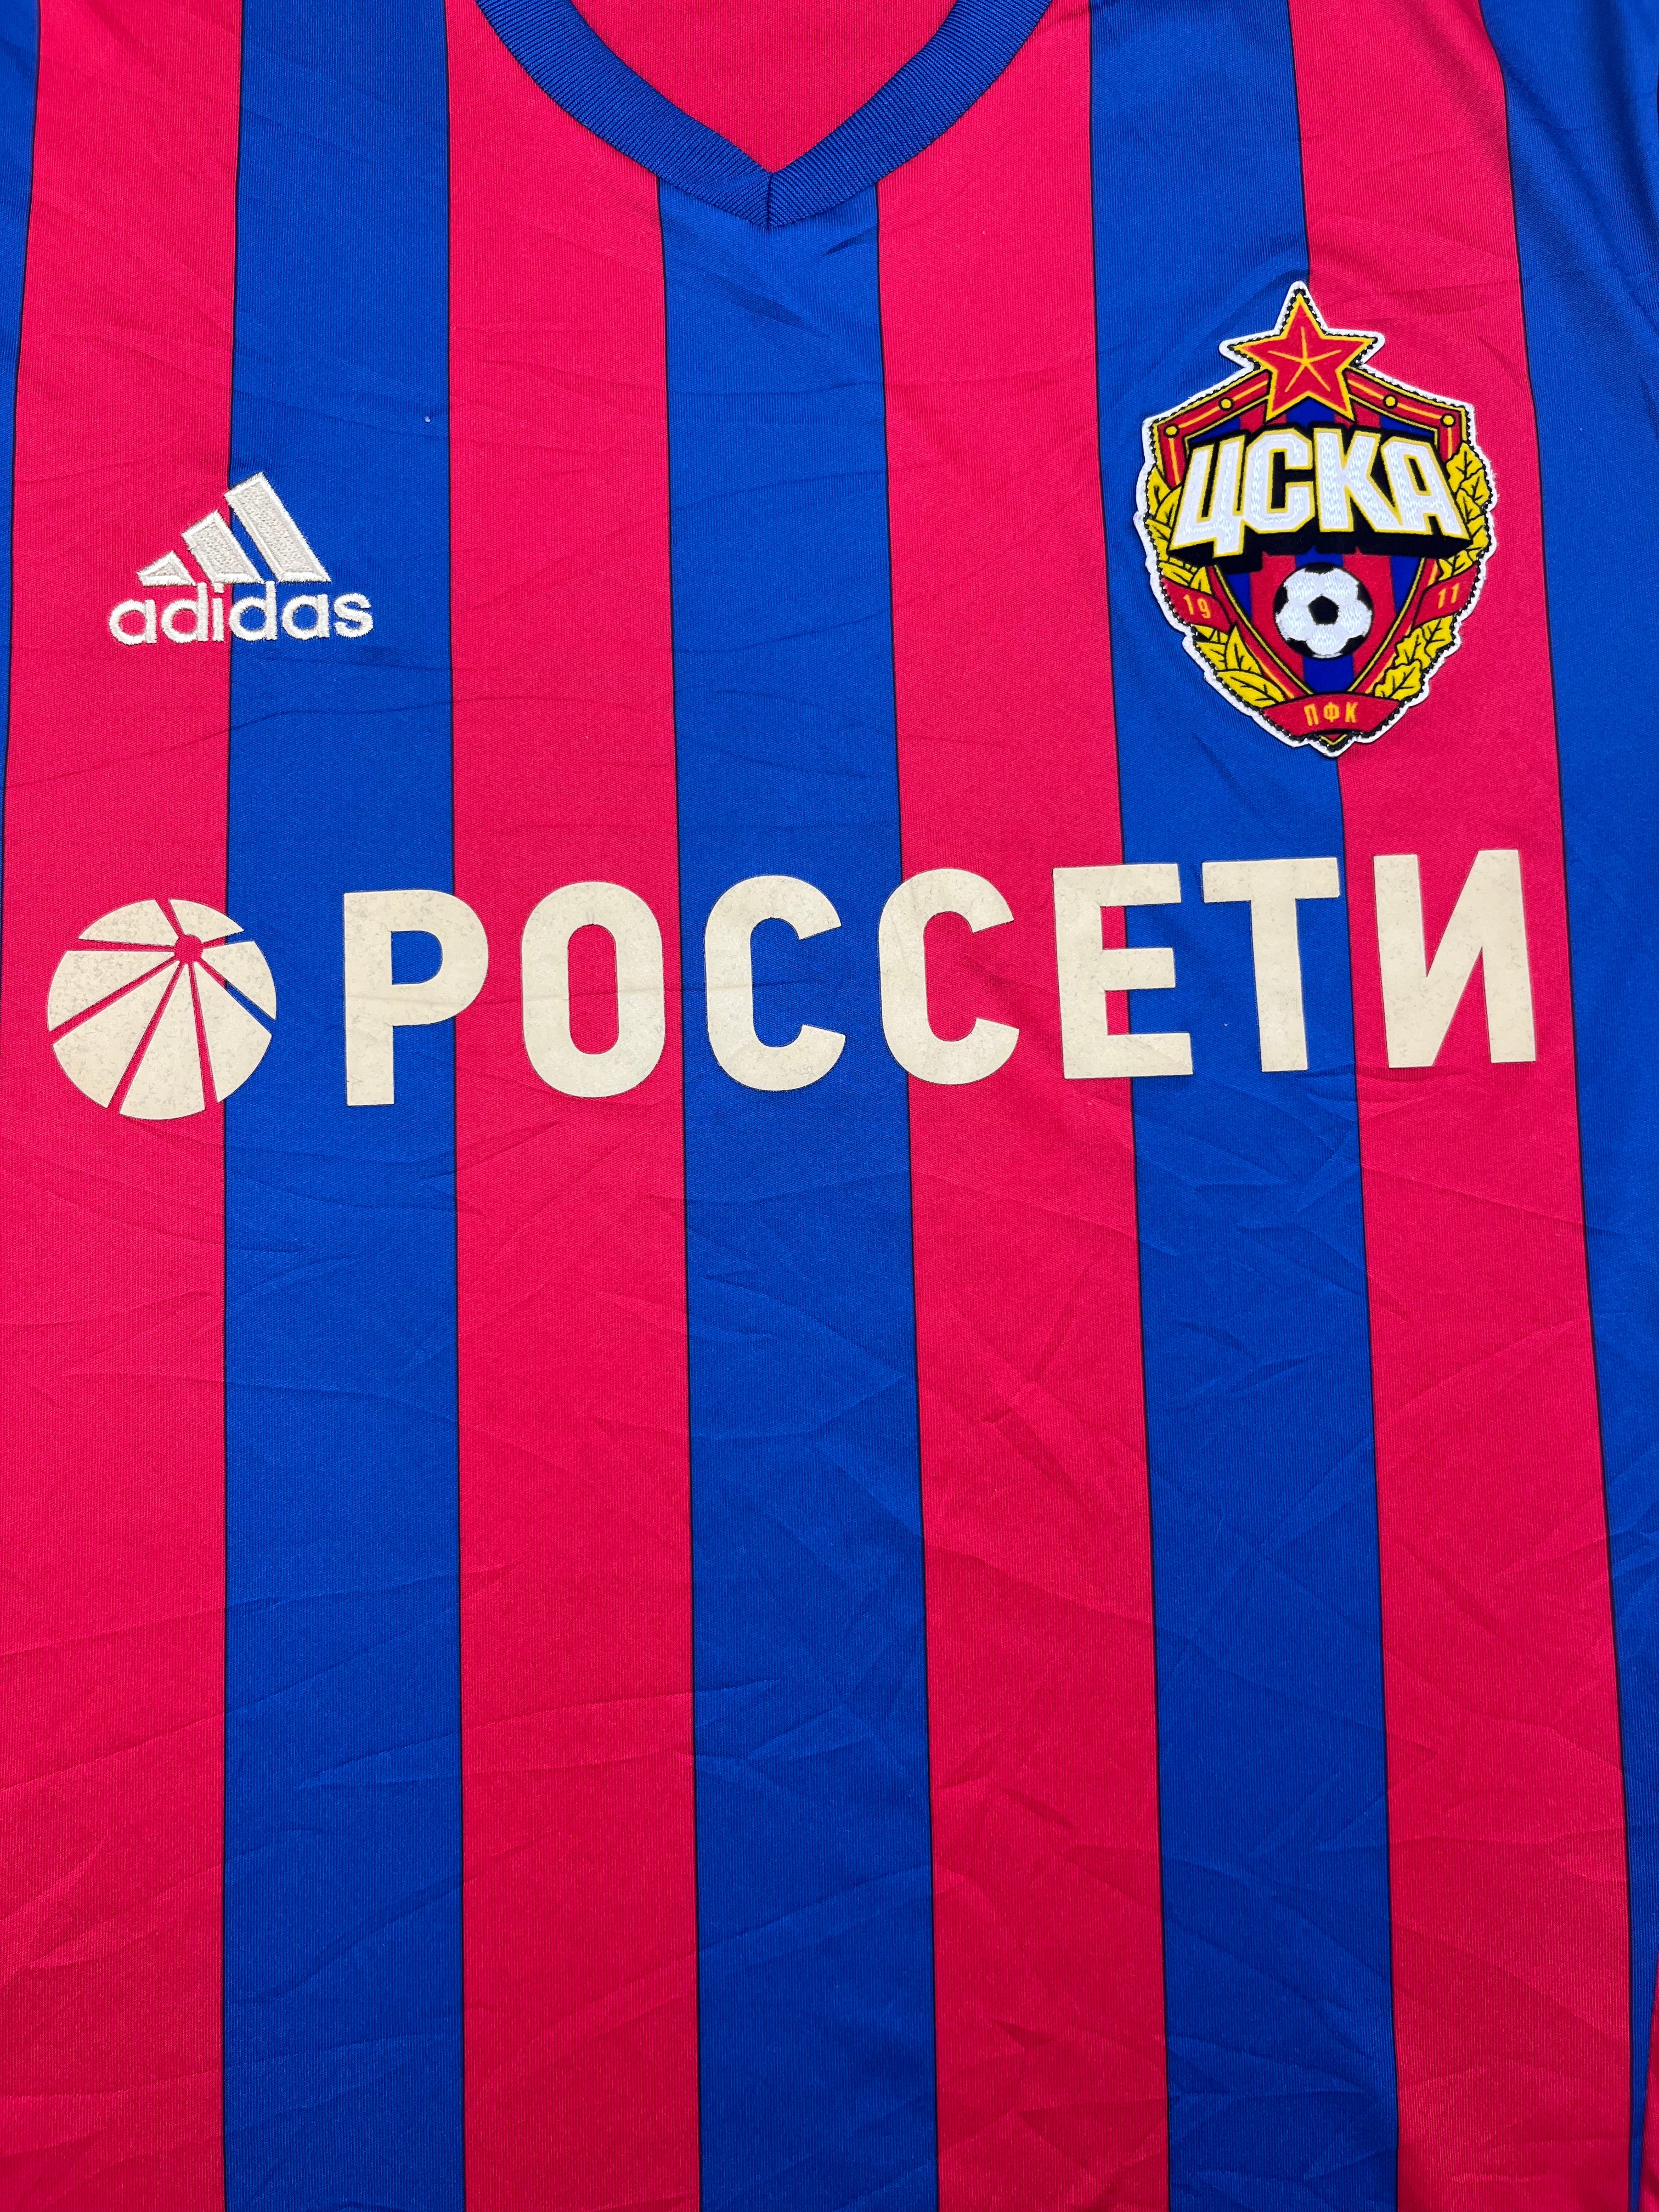 Camiseta de local del CSKA Moscú 2016/17 (M) 9/10